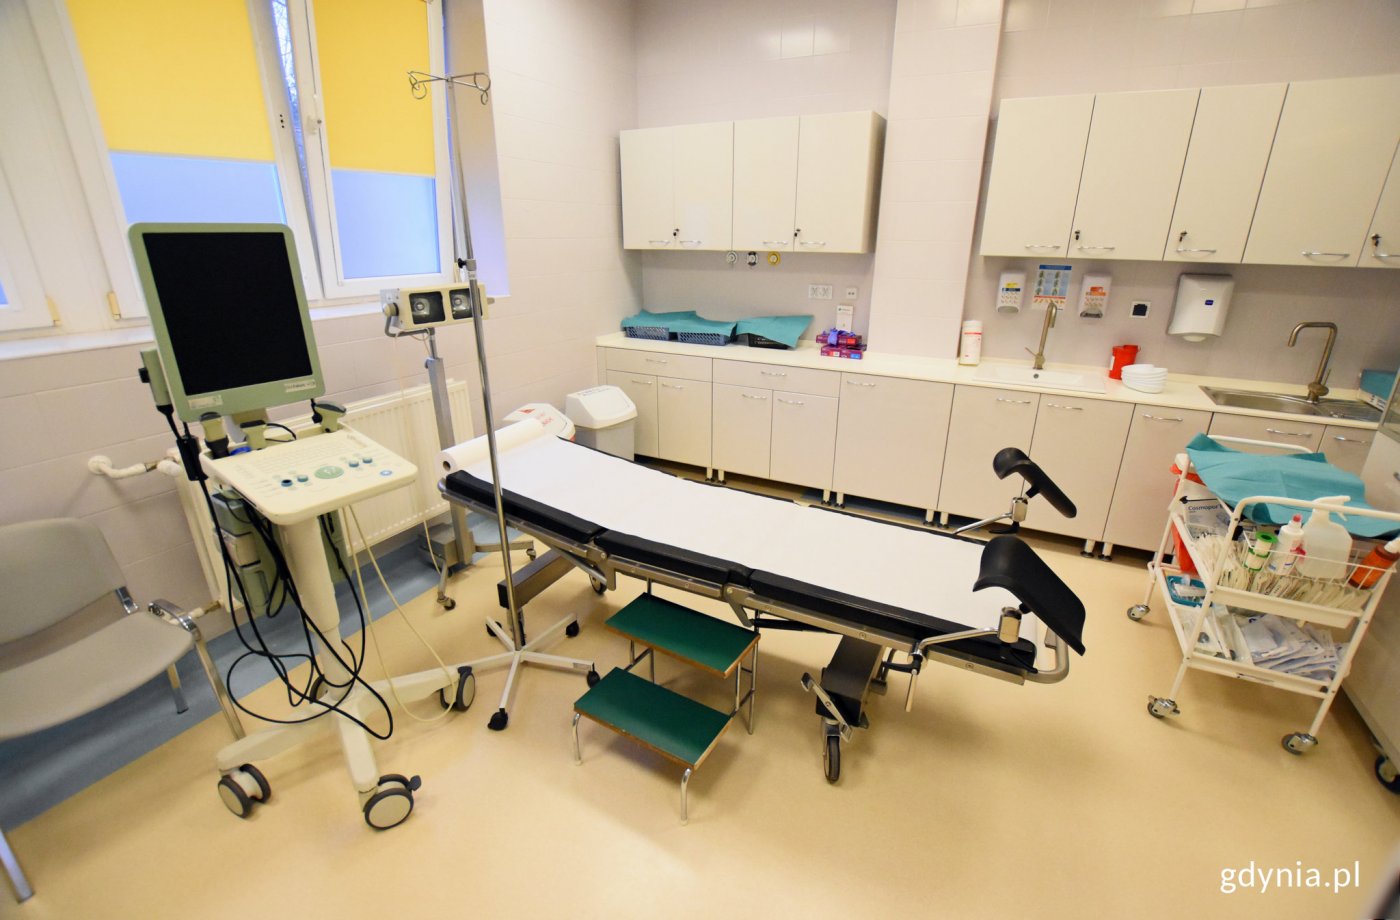 Wnętrze gabinetu lekarskiego na urologii, widoczne szafki, łóżko i sprzęt medyczny